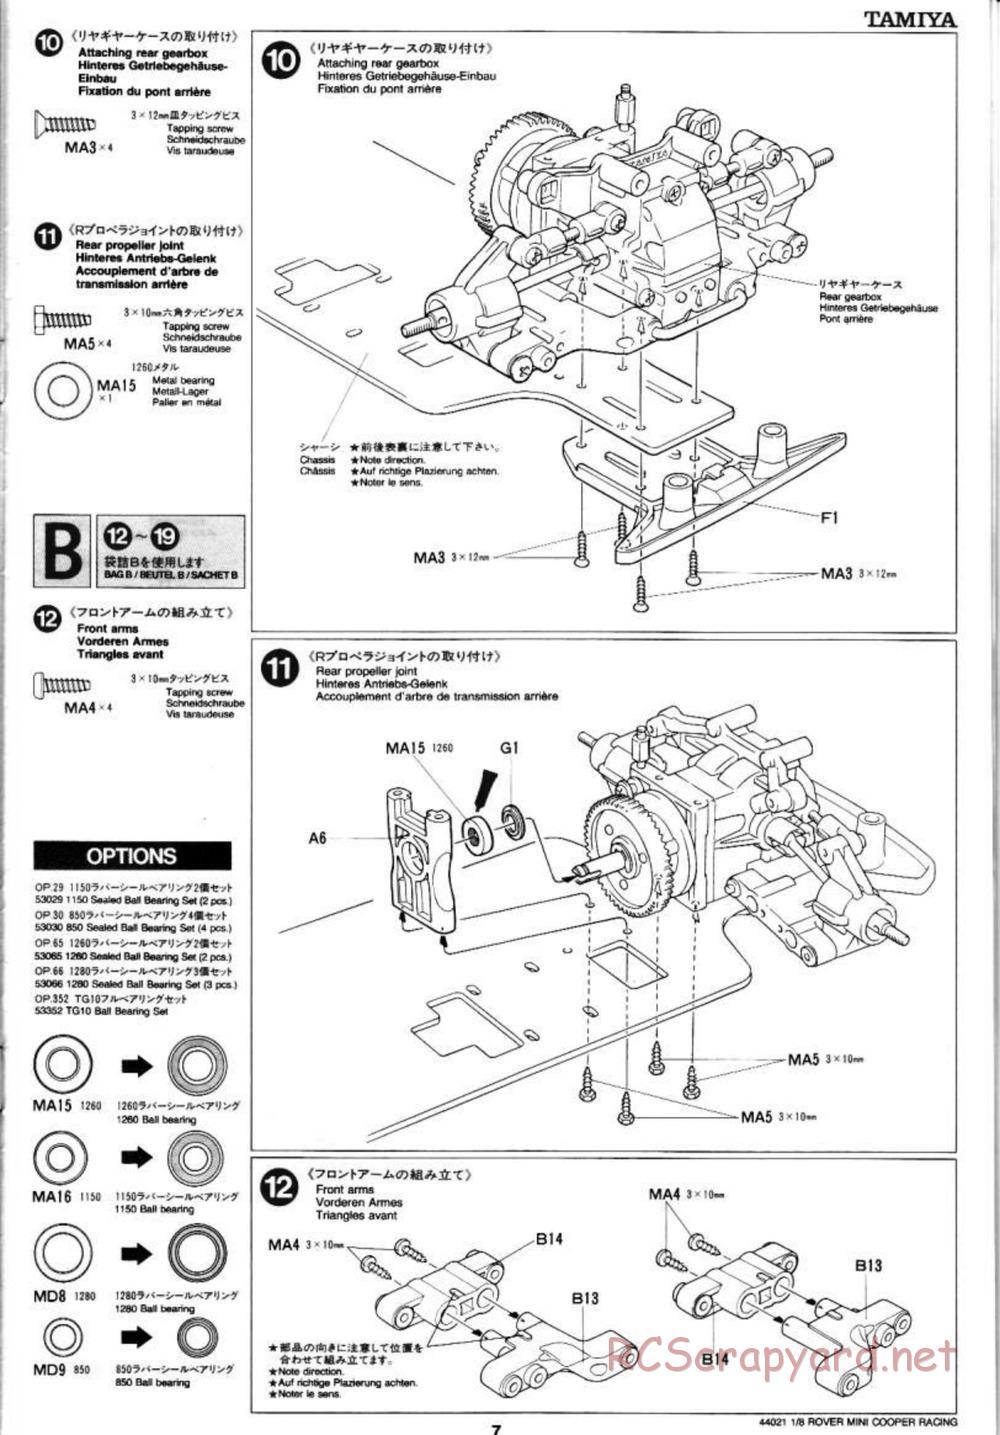 Tamiya - Rover Mini Cooper Racing - TG10 Mk.1 Chassis - Manual - Page 7